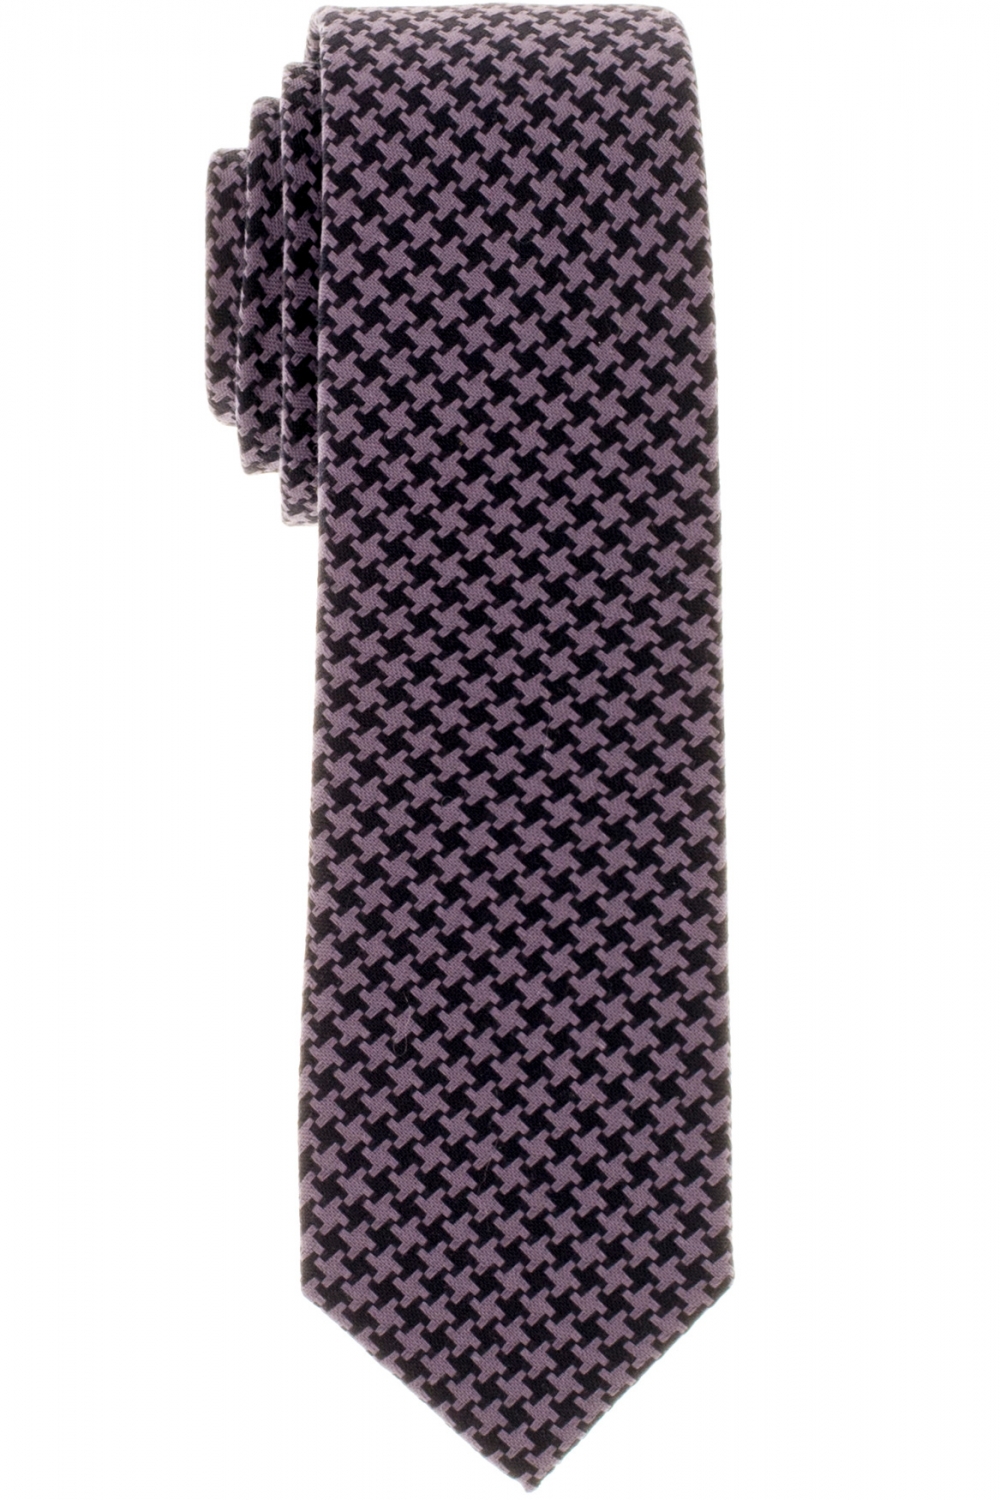 kaufen 9815 online Eterna Krawatte